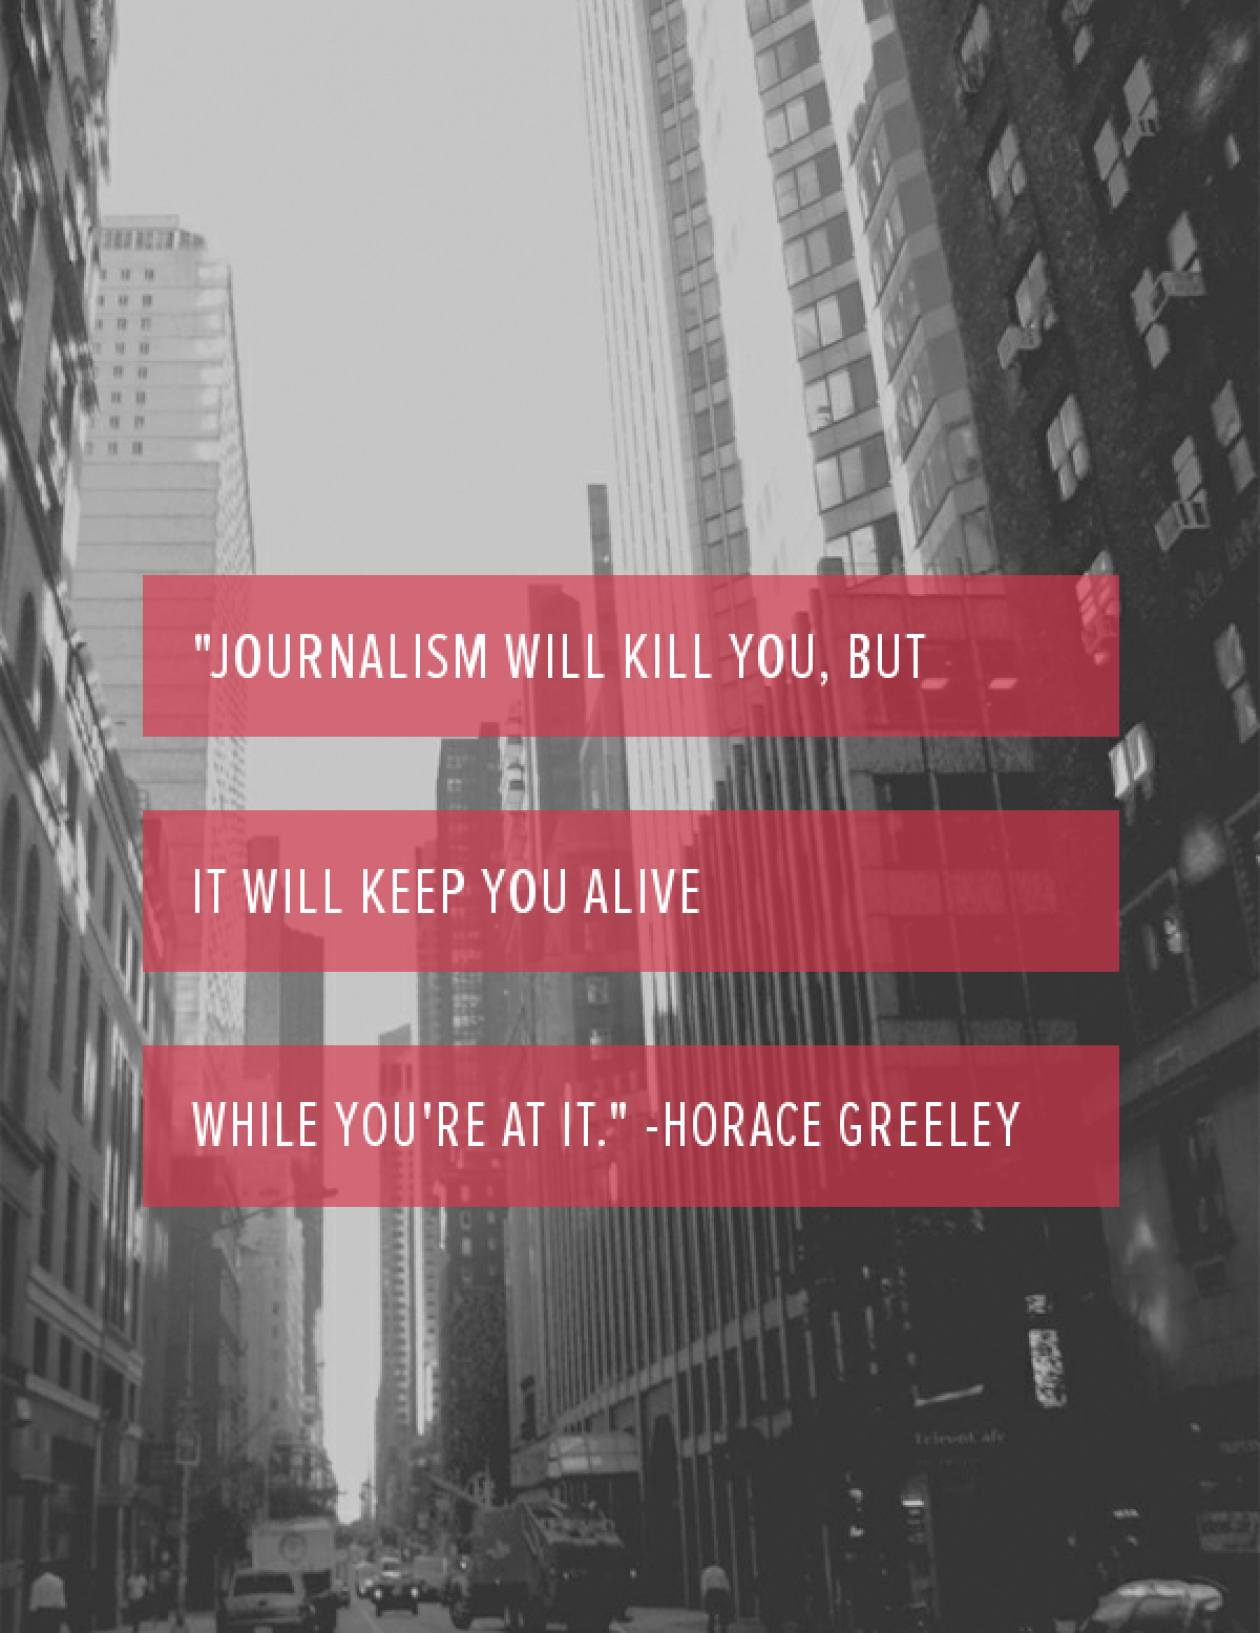 A journalist's journey…